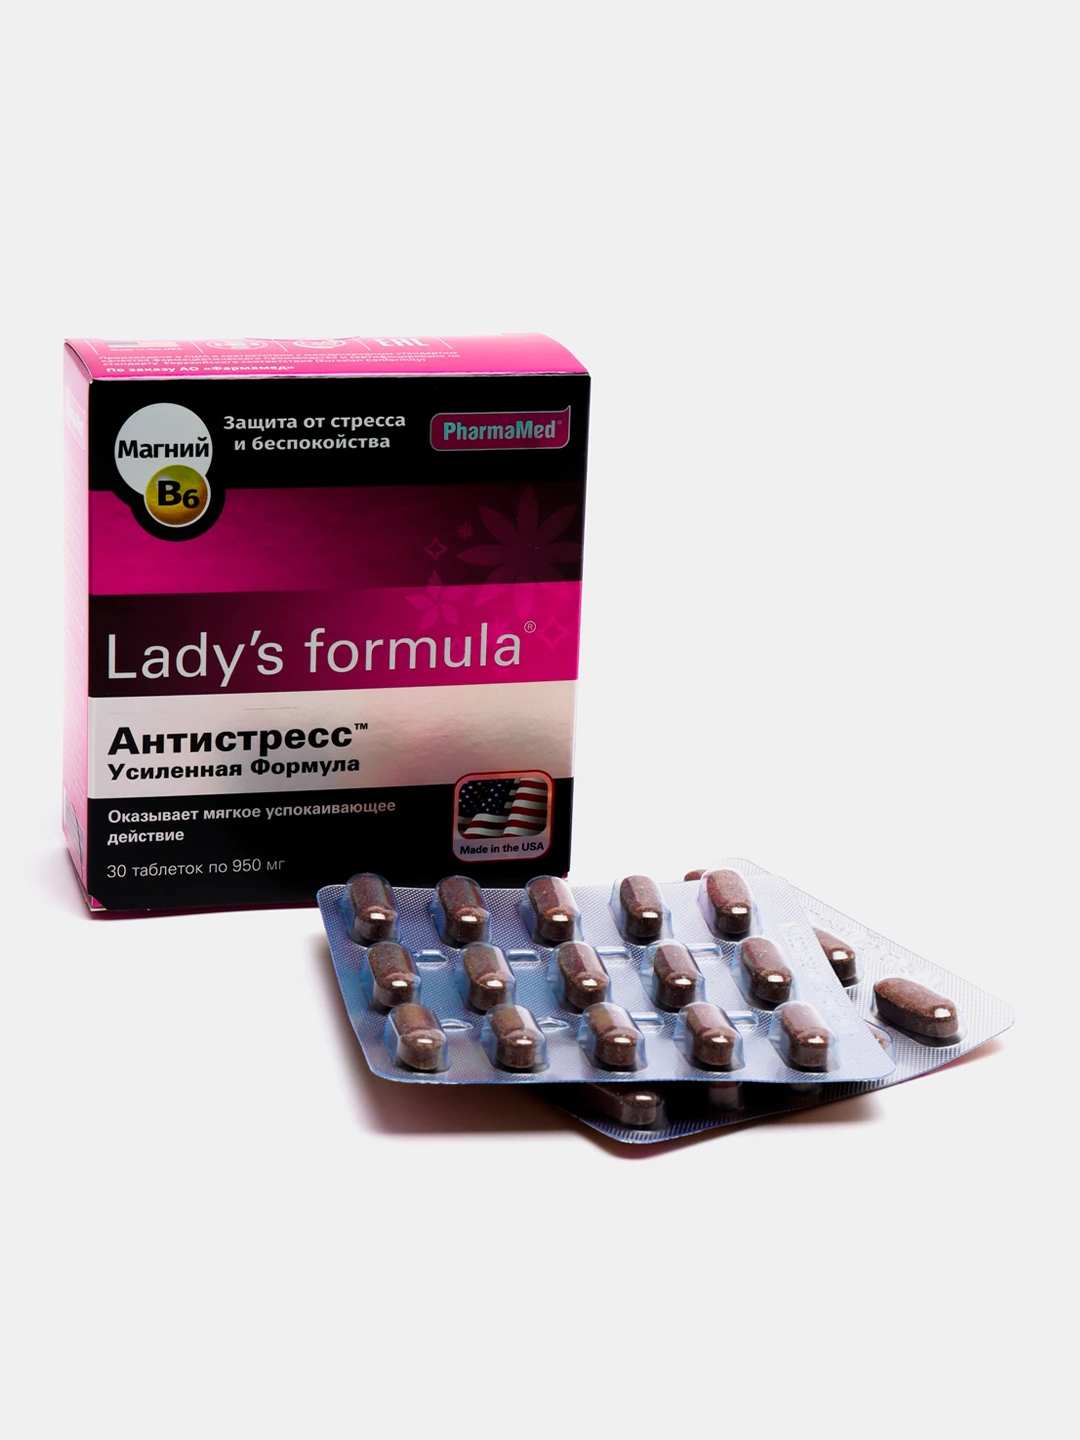 Lady s formula 30. Антистресс Formula 60 капсул Bio. Mens Formula Antistress витамины для мужчин купить.